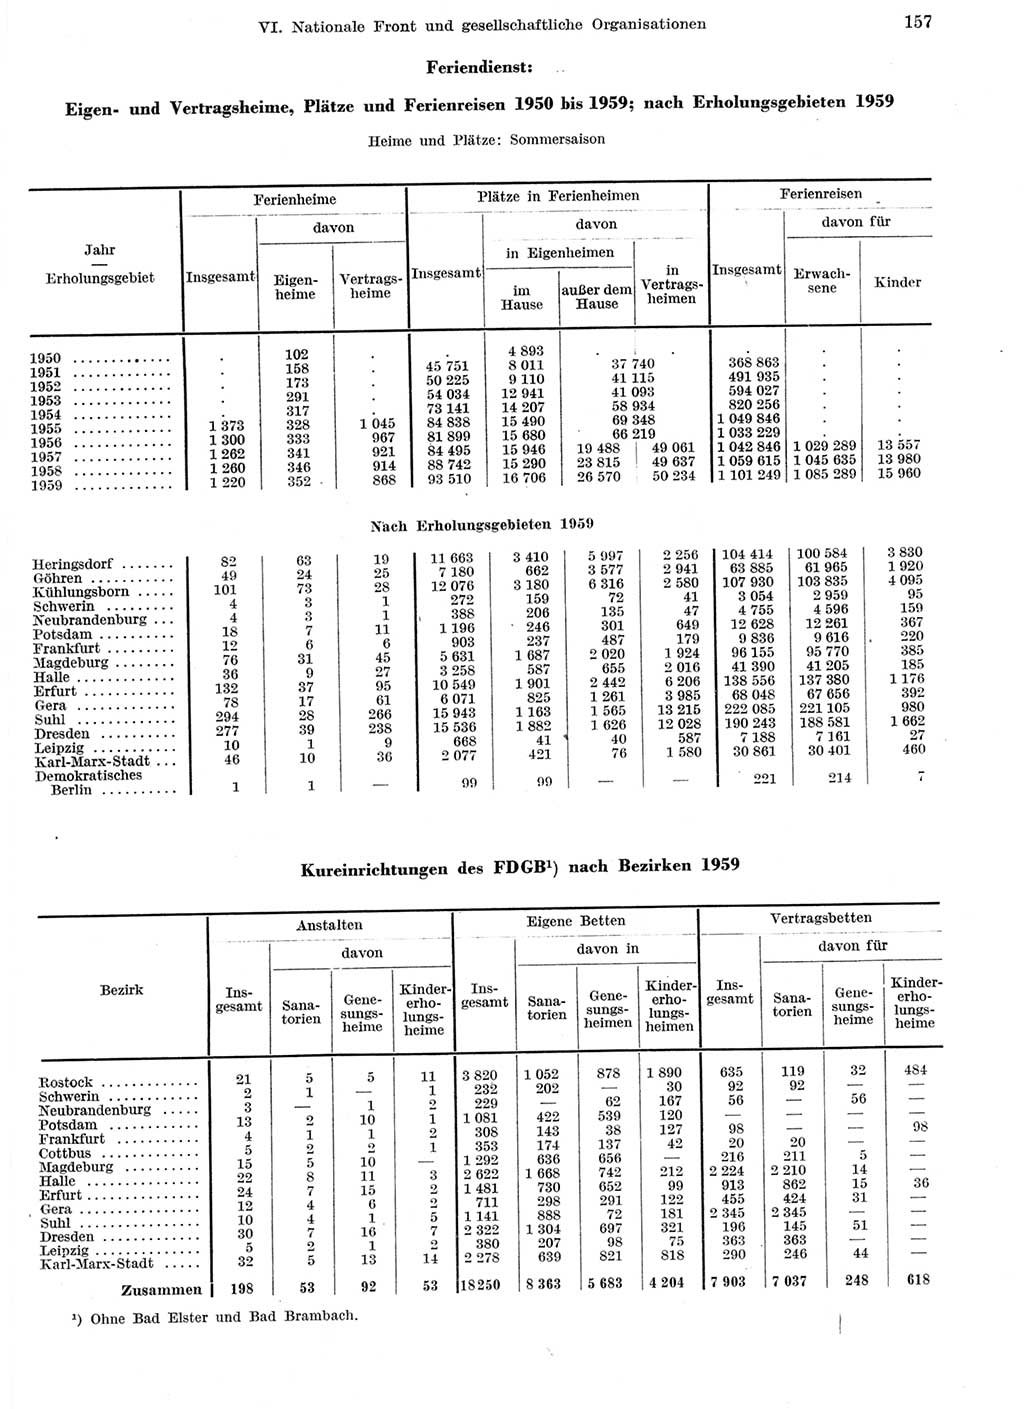 Statistisches Jahrbuch der Deutschen Demokratischen Republik (DDR) 1959, Seite 157 (Stat. Jb. DDR 1959, S. 157)